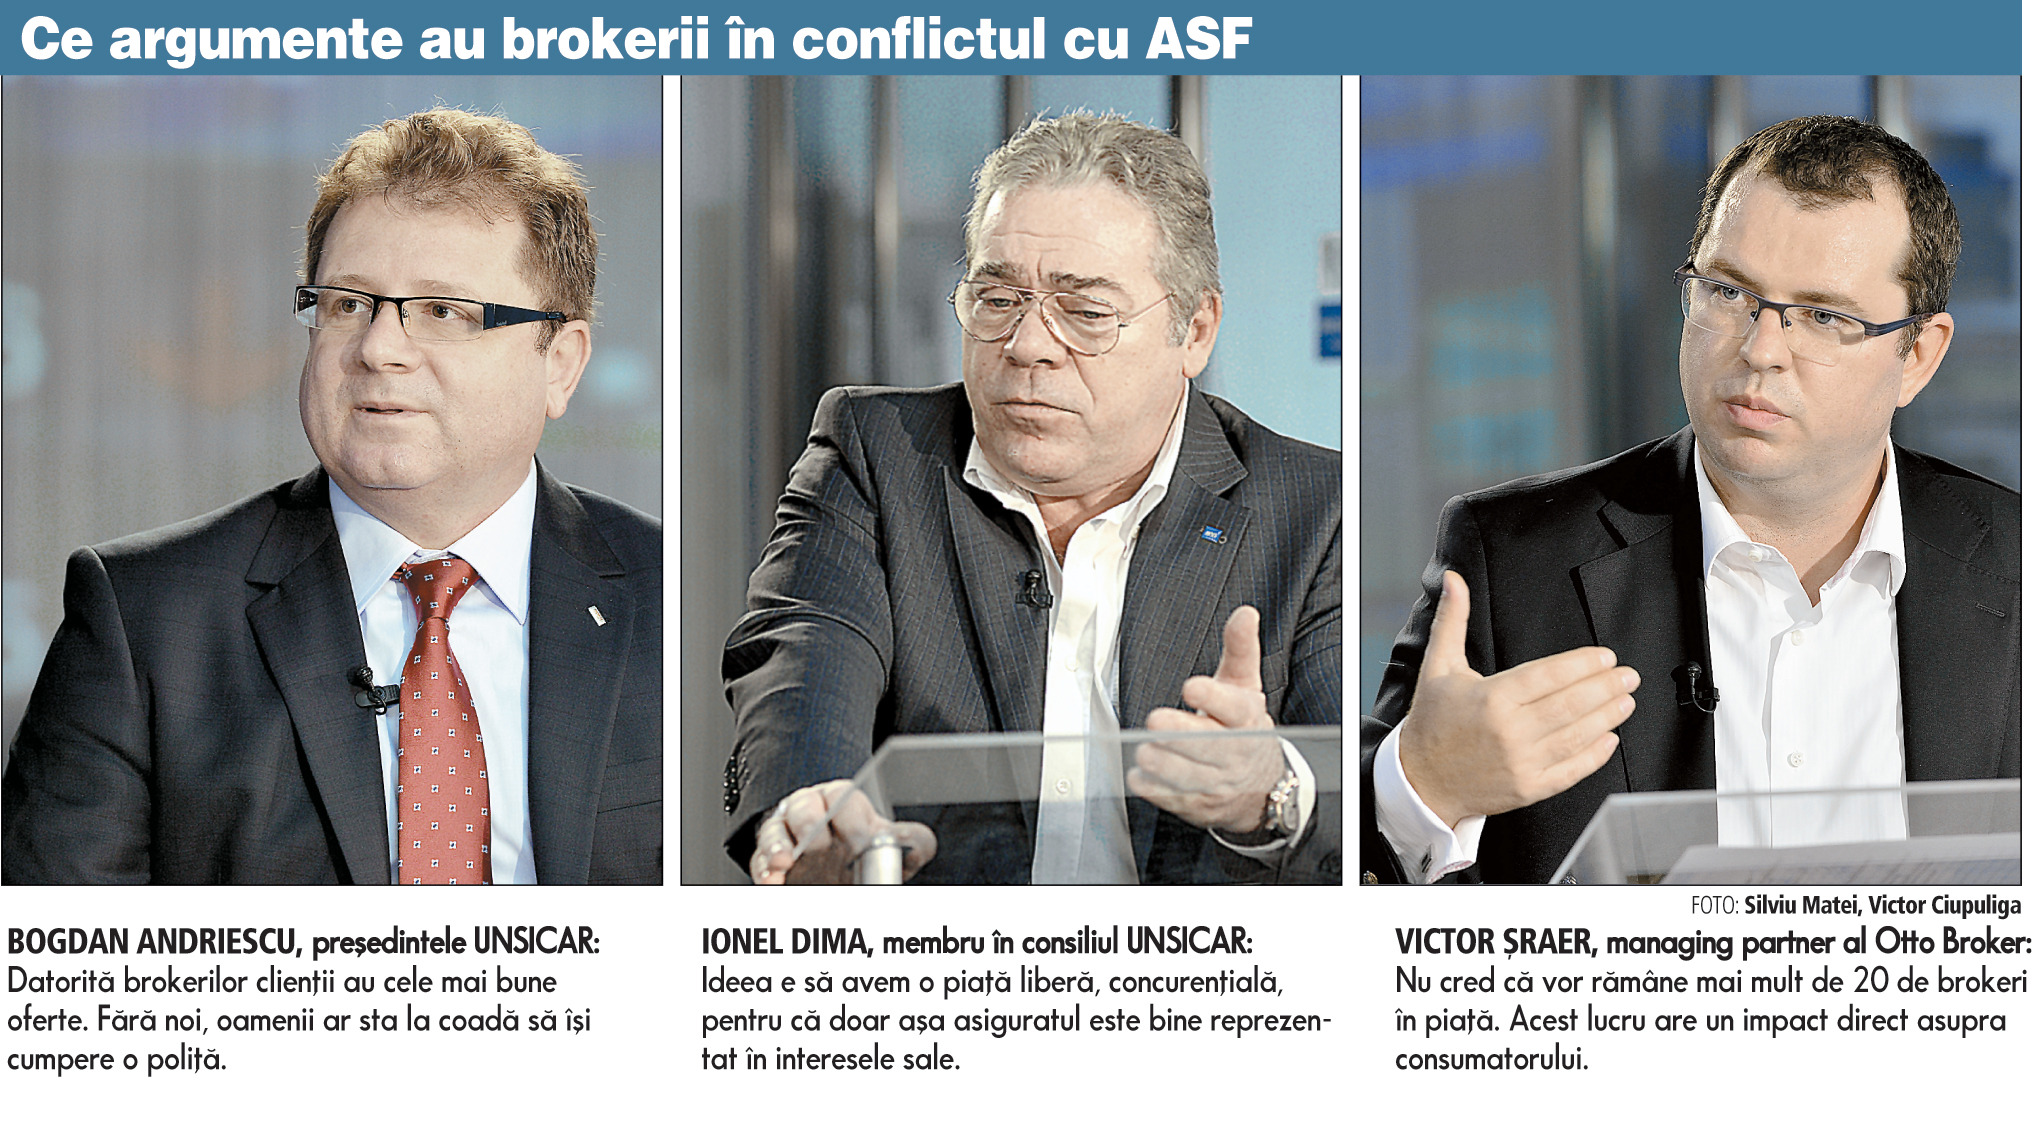 Brokerii pun clienţii la mijloc în lupta cu ASF: Fără noi, oamenii ar sta la coadă să îşi ia o poliţă